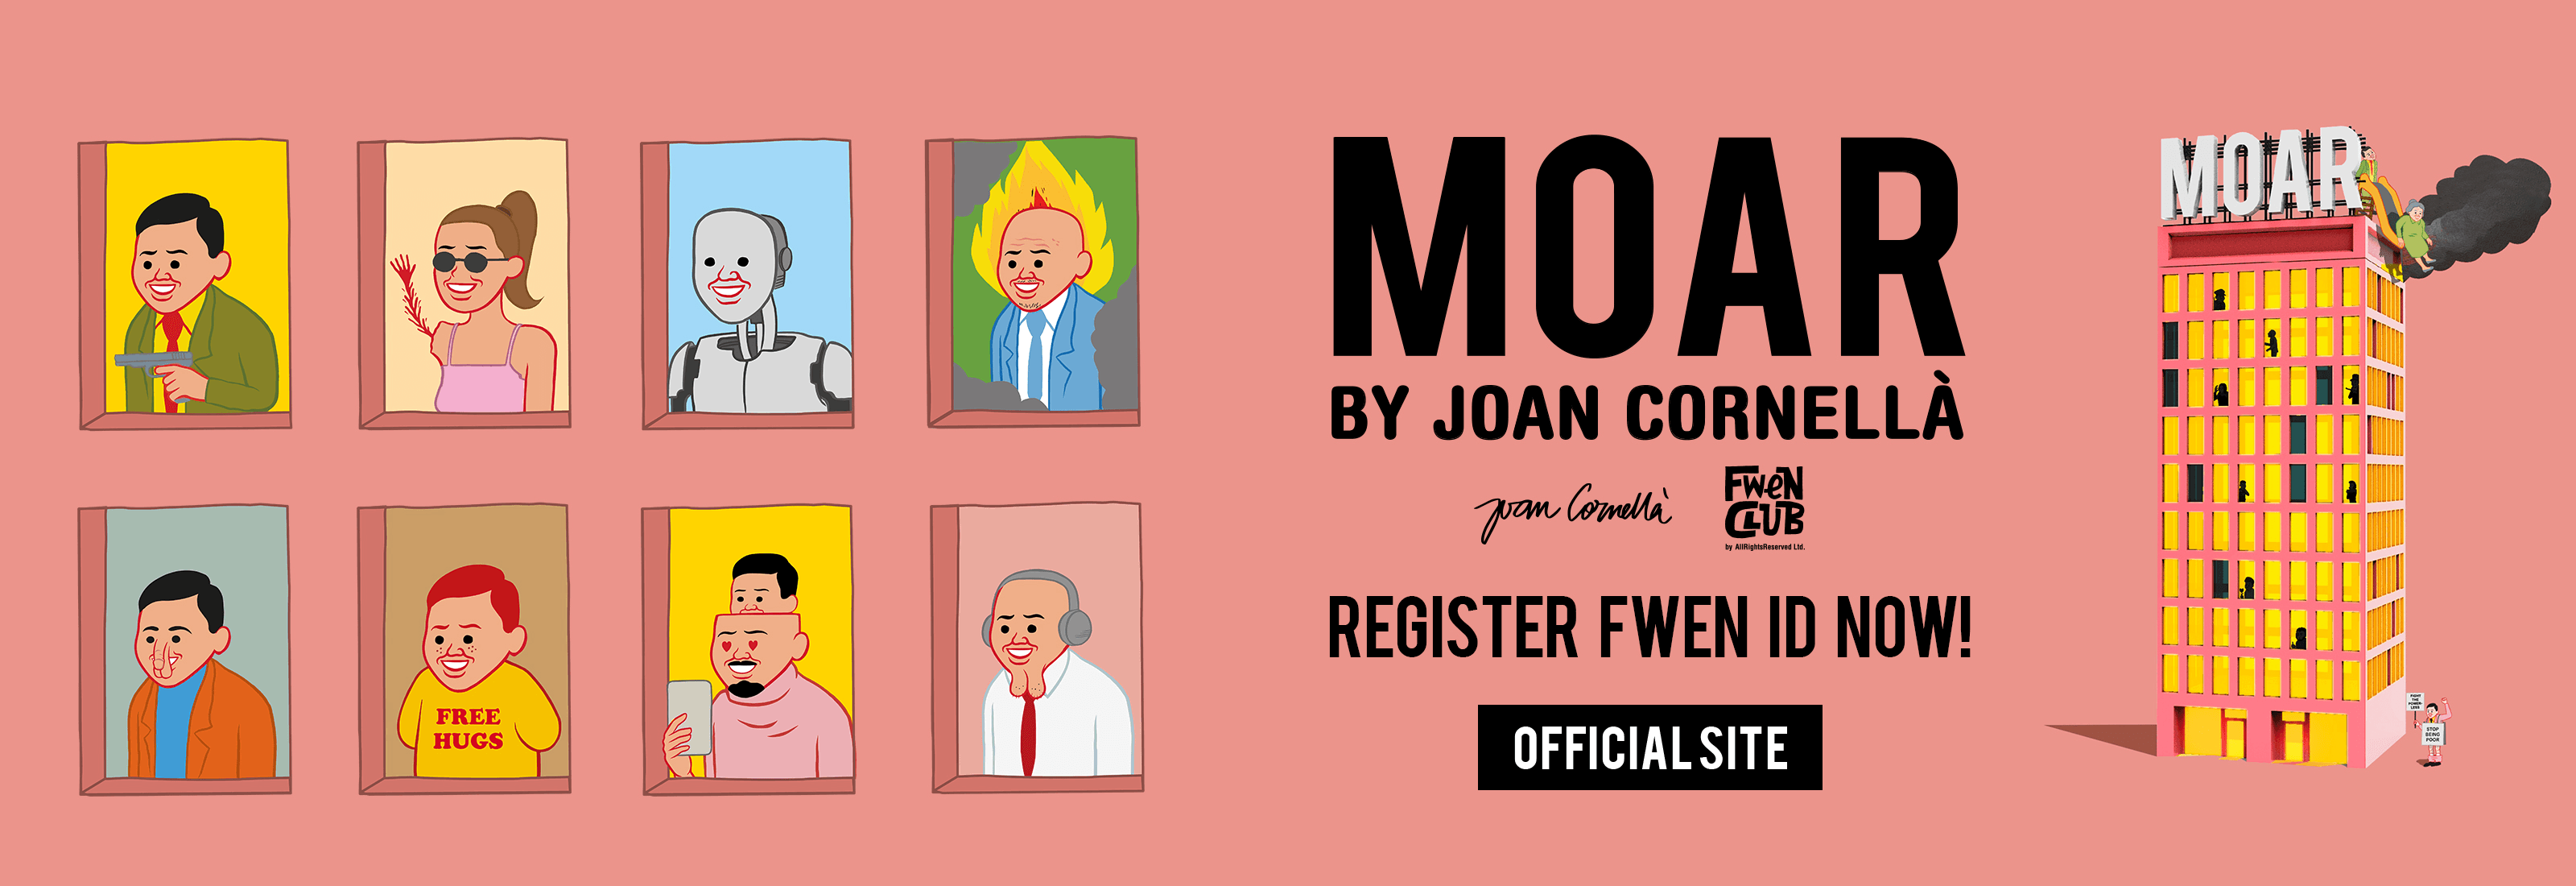 "MOAR" by Joan Cornella